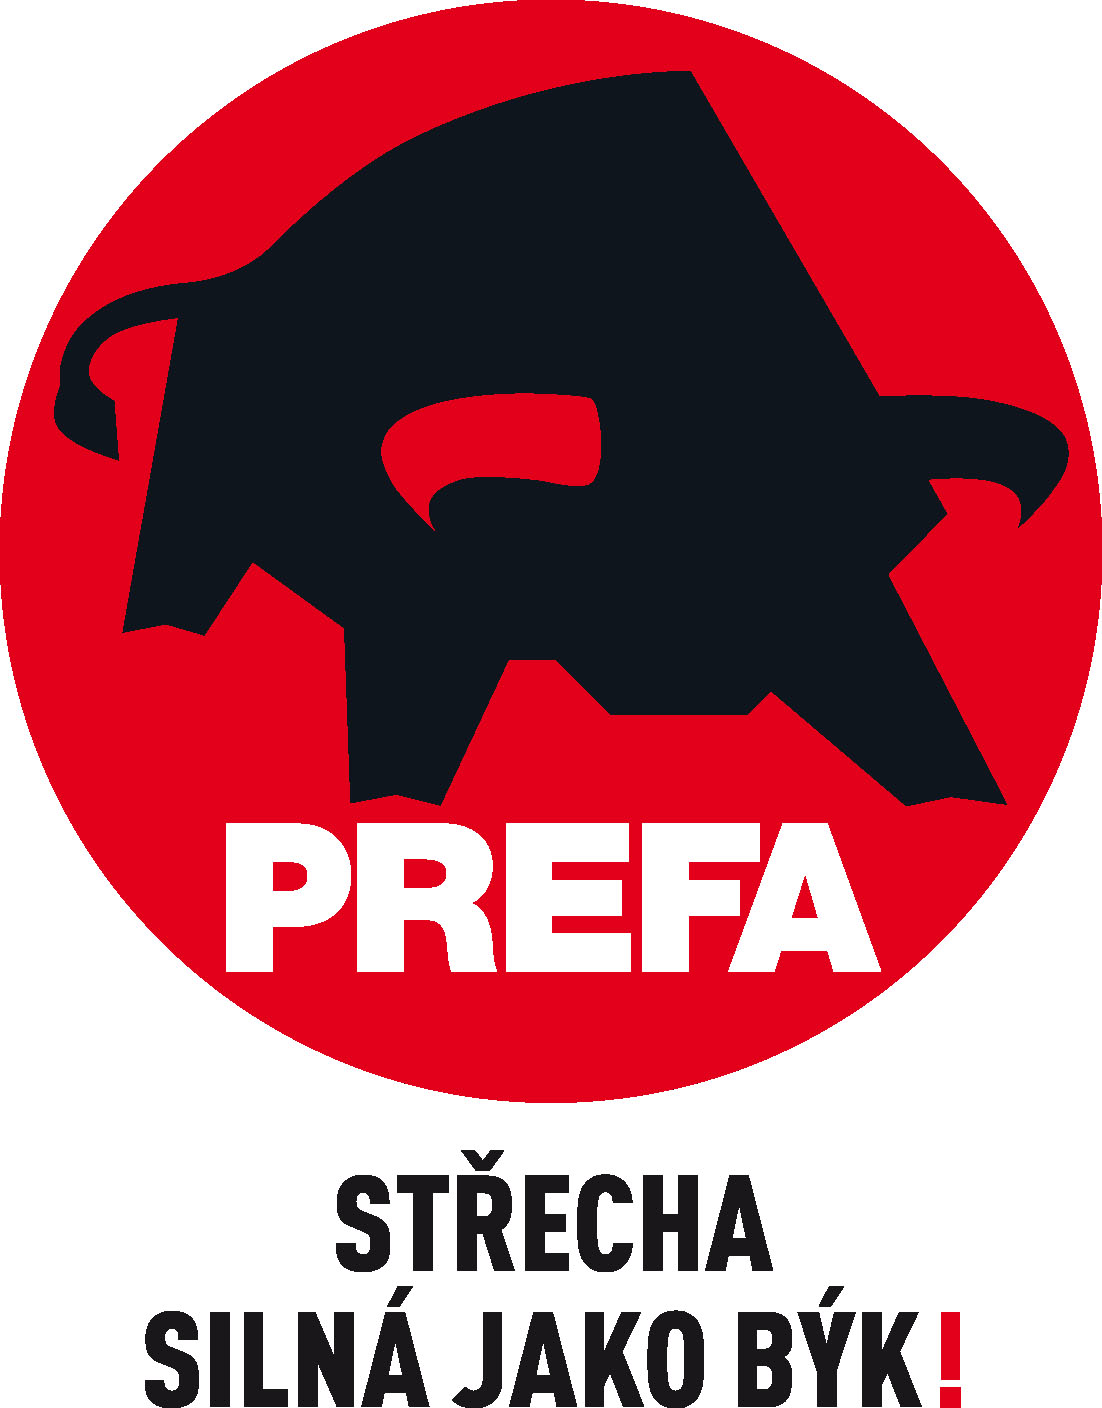 prefa-logo.jpg